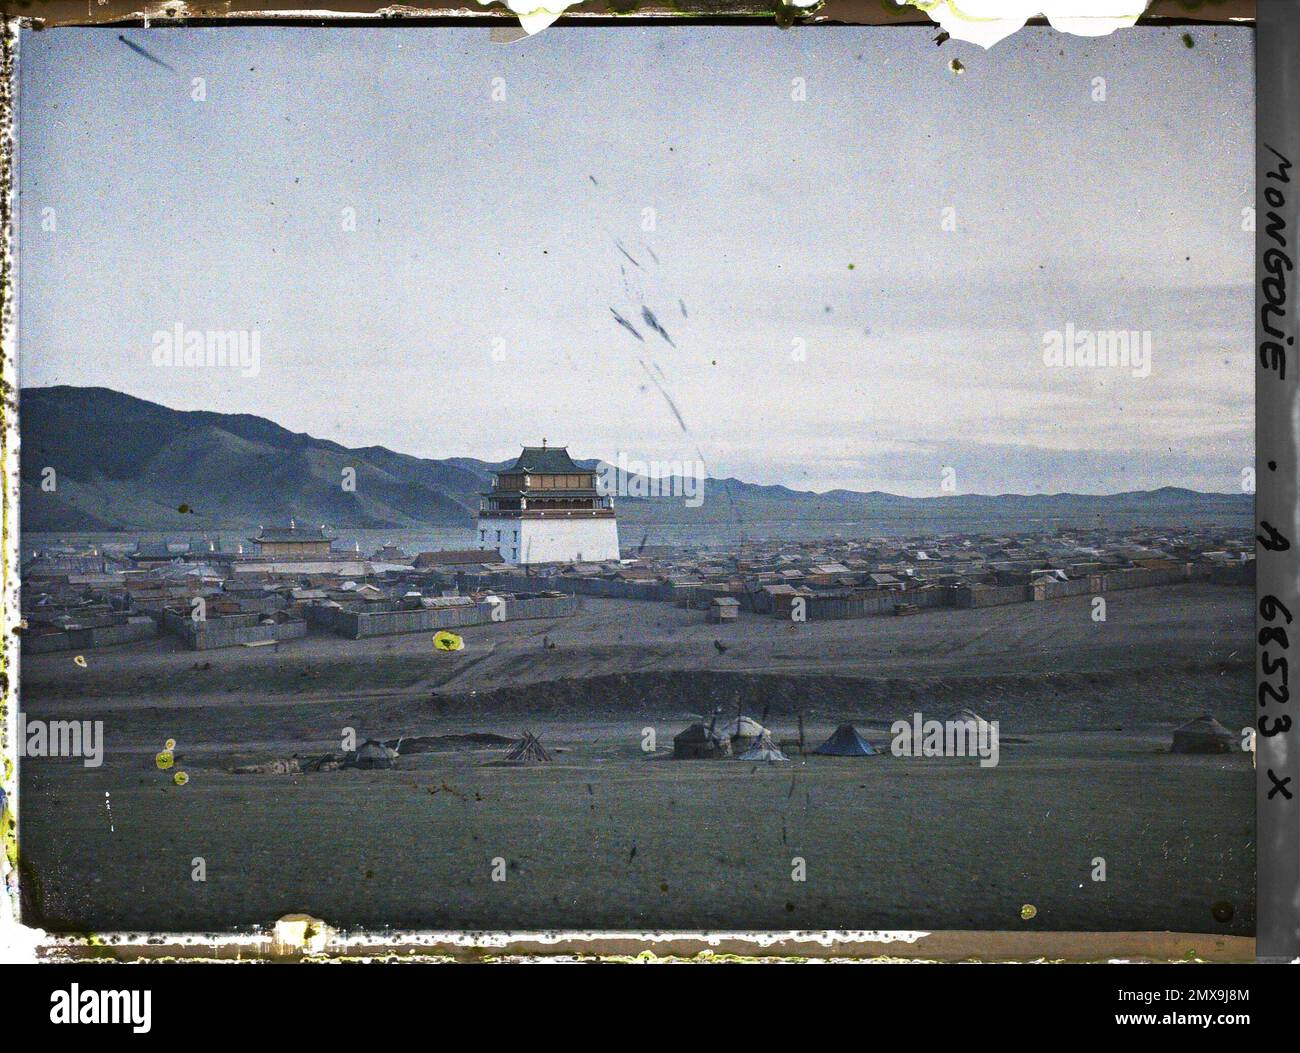 Orga, Mongolie vue panoramique de Baruun Khüree ou Gandantegchinlin, la ville de lamas , 1913 - Mongolie - Stéphane Passet - (6-25 juillet) Banque D'Images